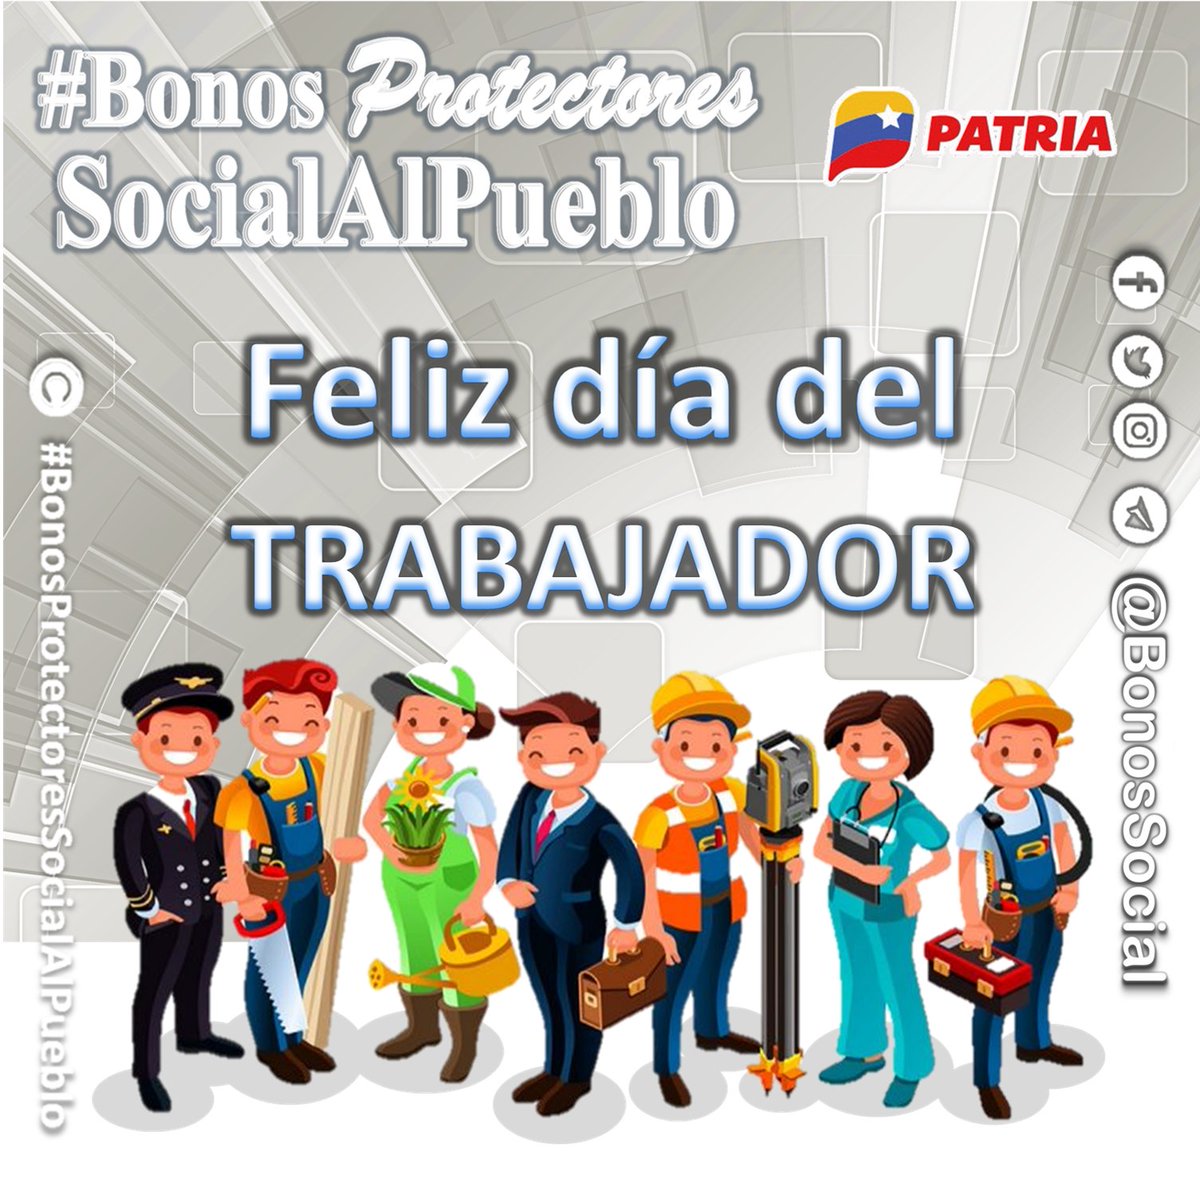 Hoy #1May de 2023, el #SistemaPatria y #PlataformaPatria se une a la celebración del #DiaDelTrabajador para todos los trabajadores y trabajadoras de la patria. ✅ Feliz Día del Trabajador #Venezuela. @BonosSocial #TrabajoYPatria